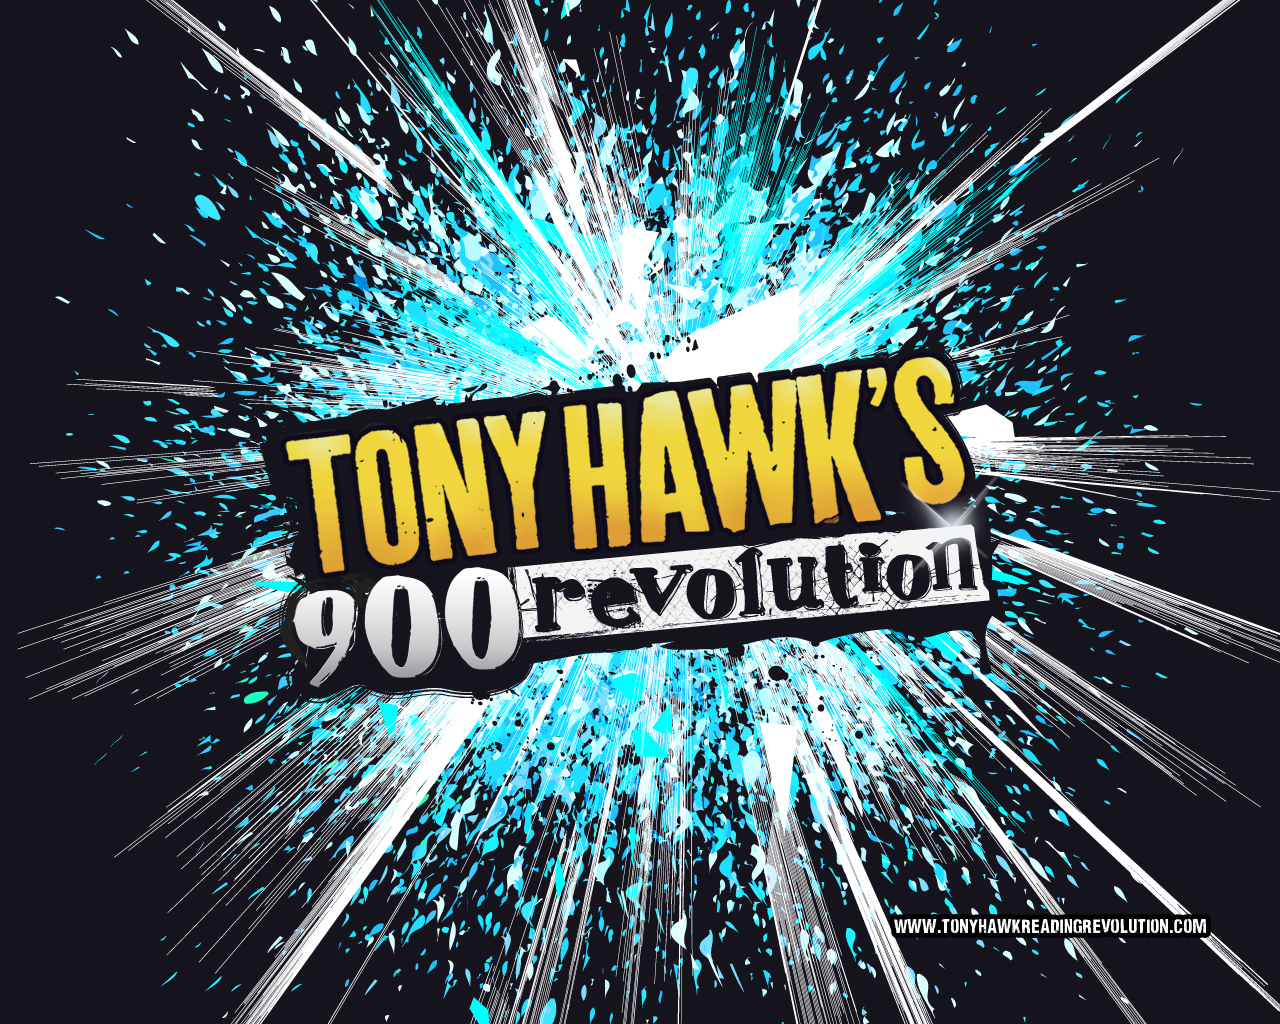 Tony Hawk's Reading Revolution